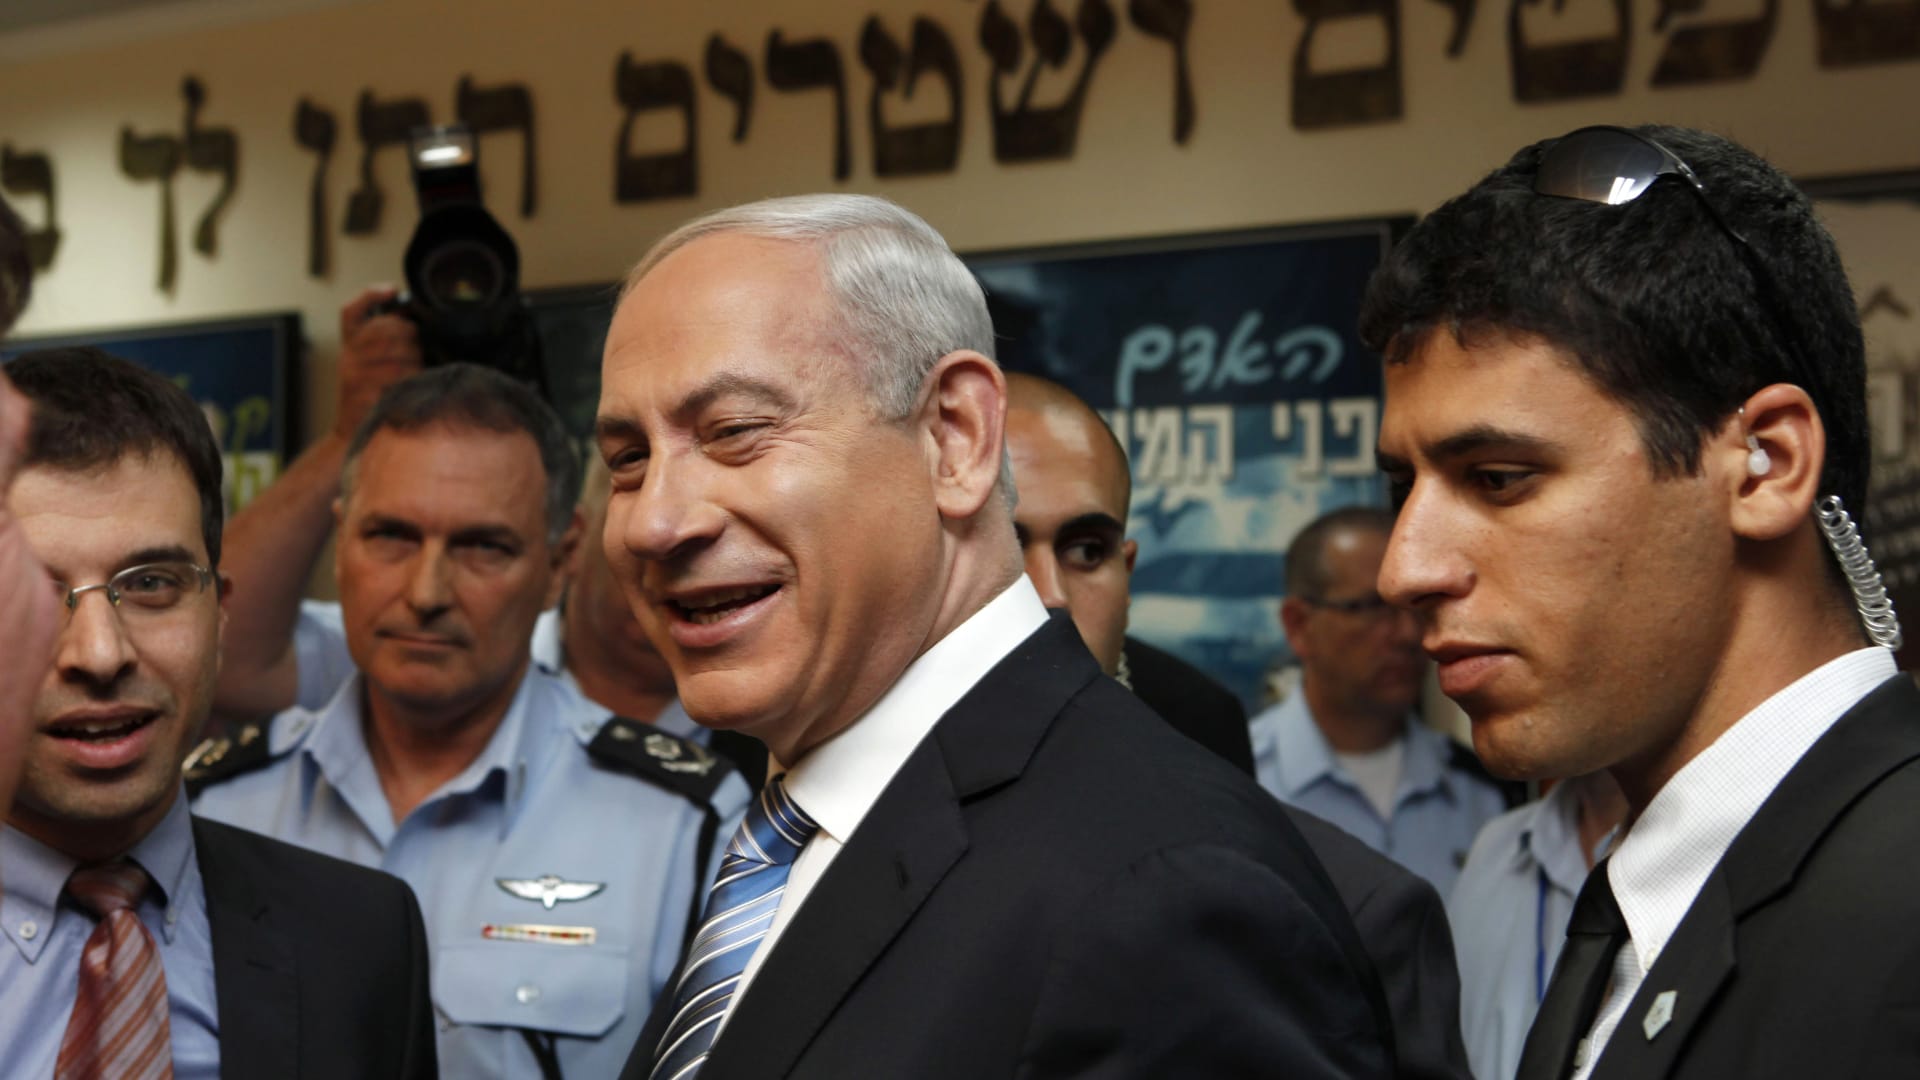 نتنياهو يشعل جدلا بأن إسرائيل "لليهود".. و"وندر وومان" تتدخل